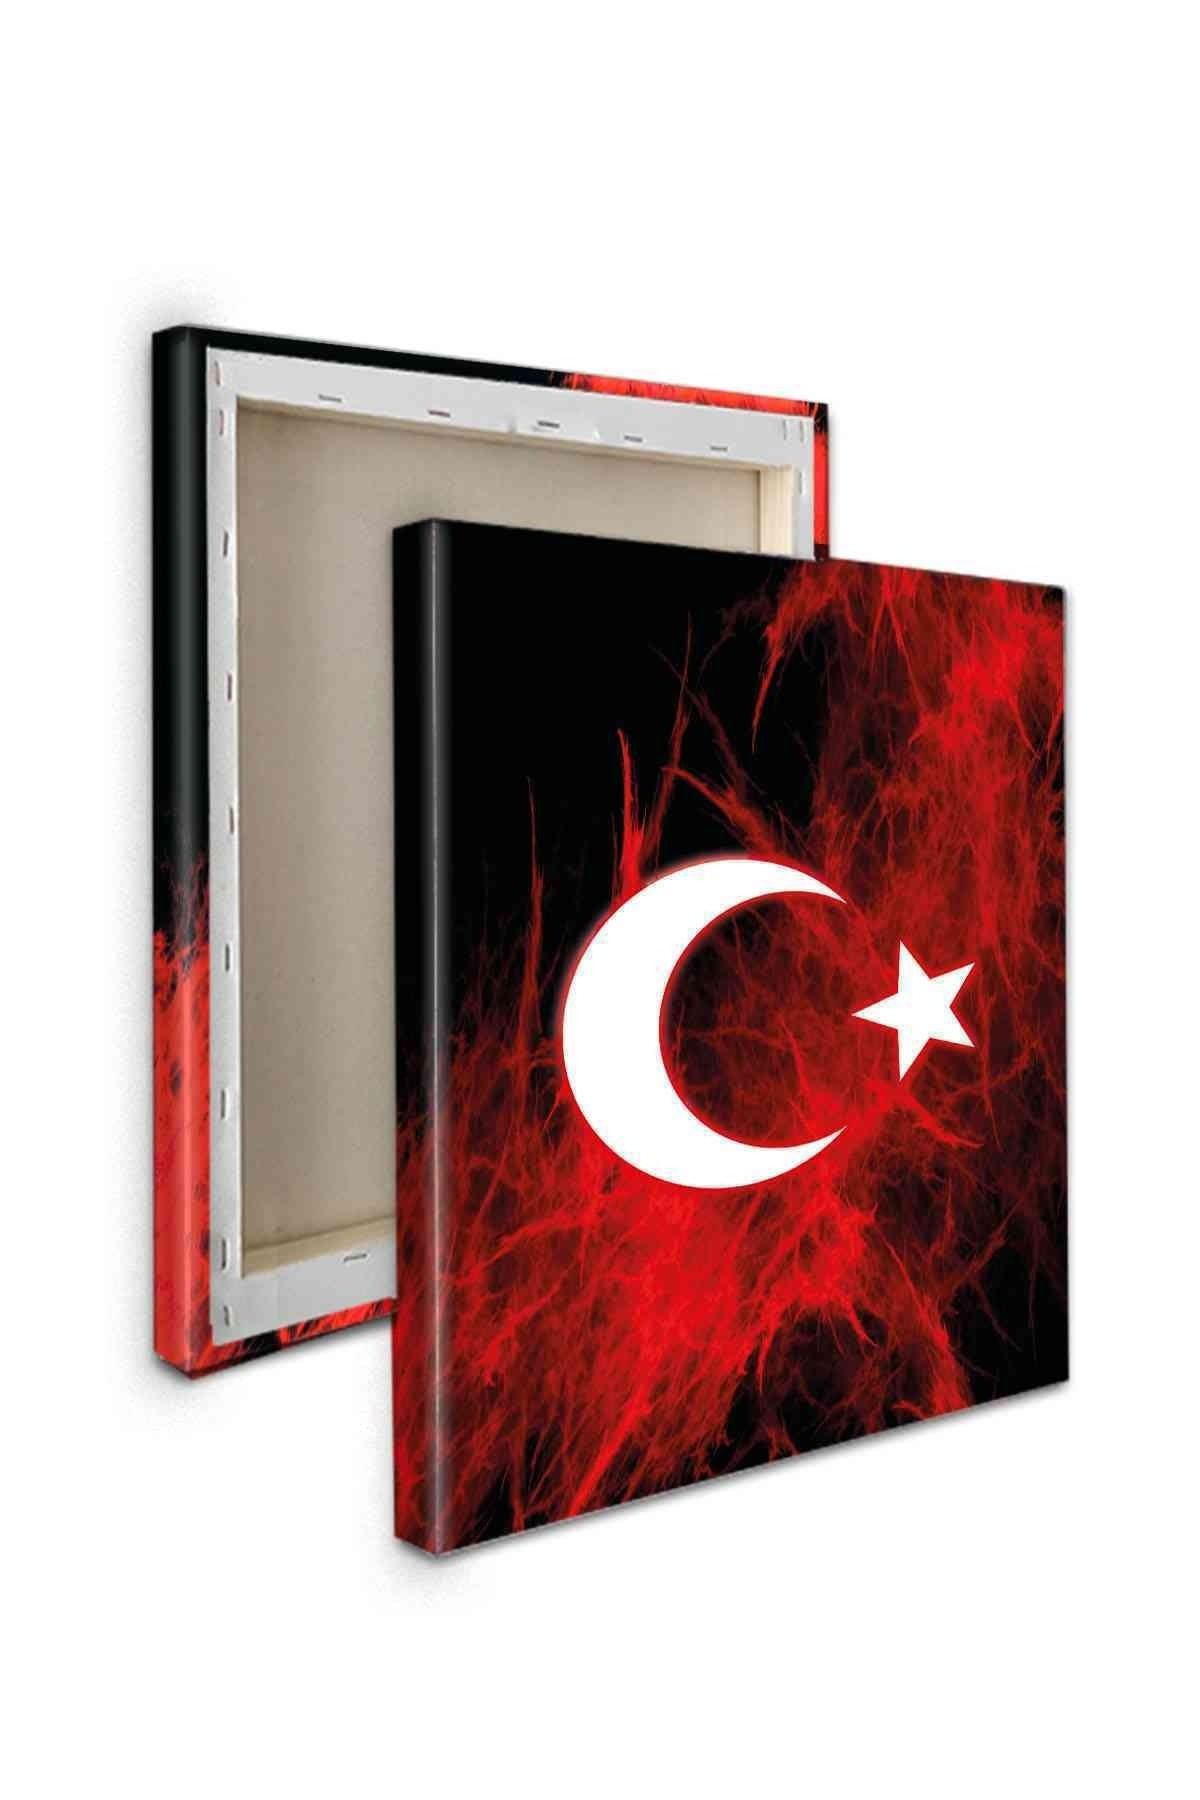 CLZ104 Parçalı Atatürk ve Bayrak Tabloları   (140 x 100) cm